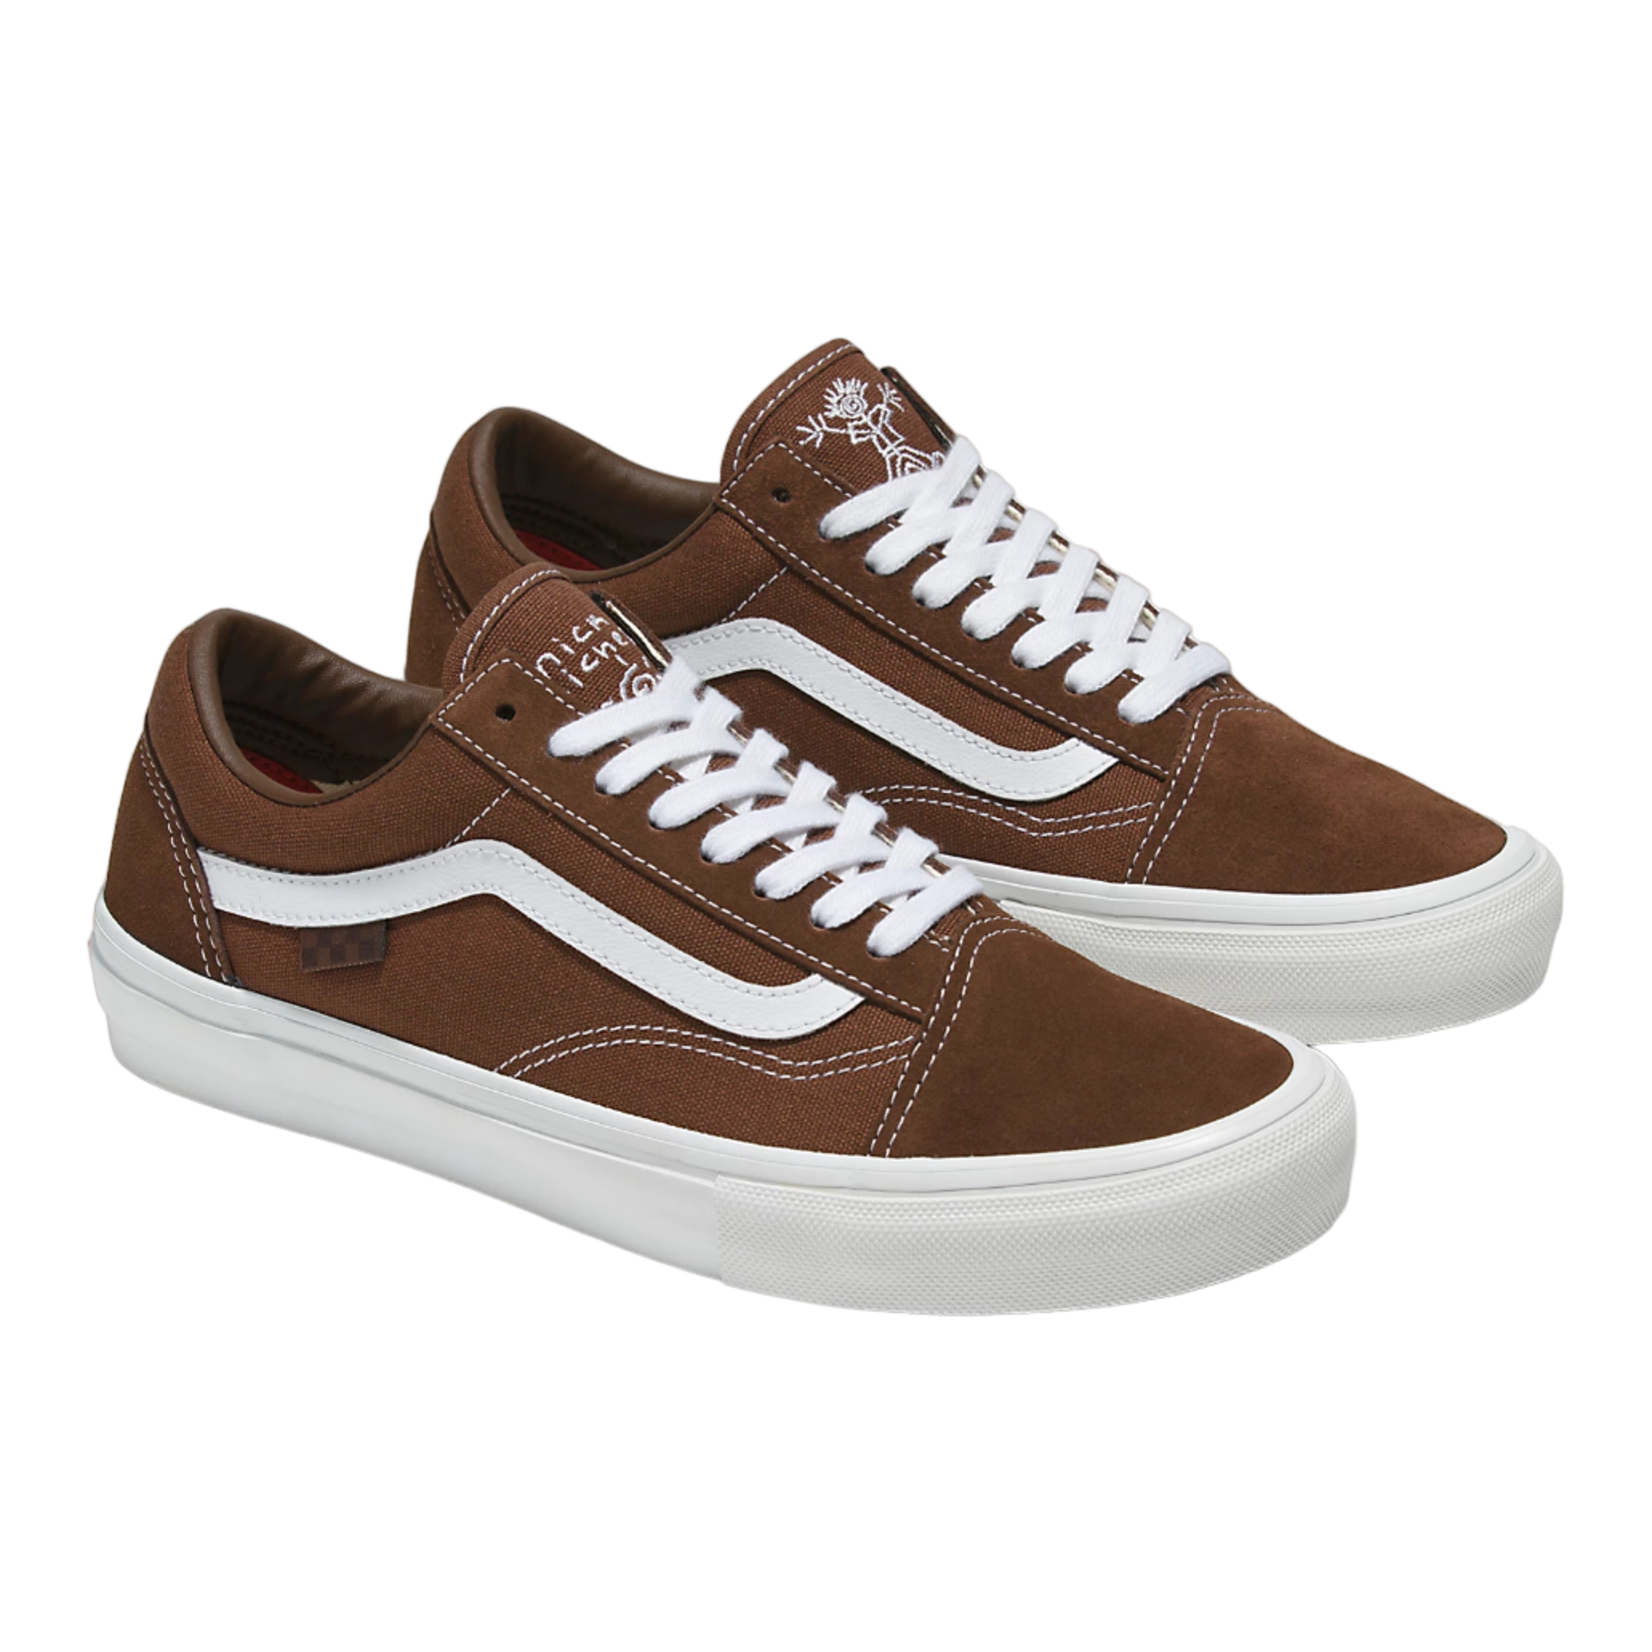 Vans Vans Nick Michel Old Skool Skate Shoes - Brown/White